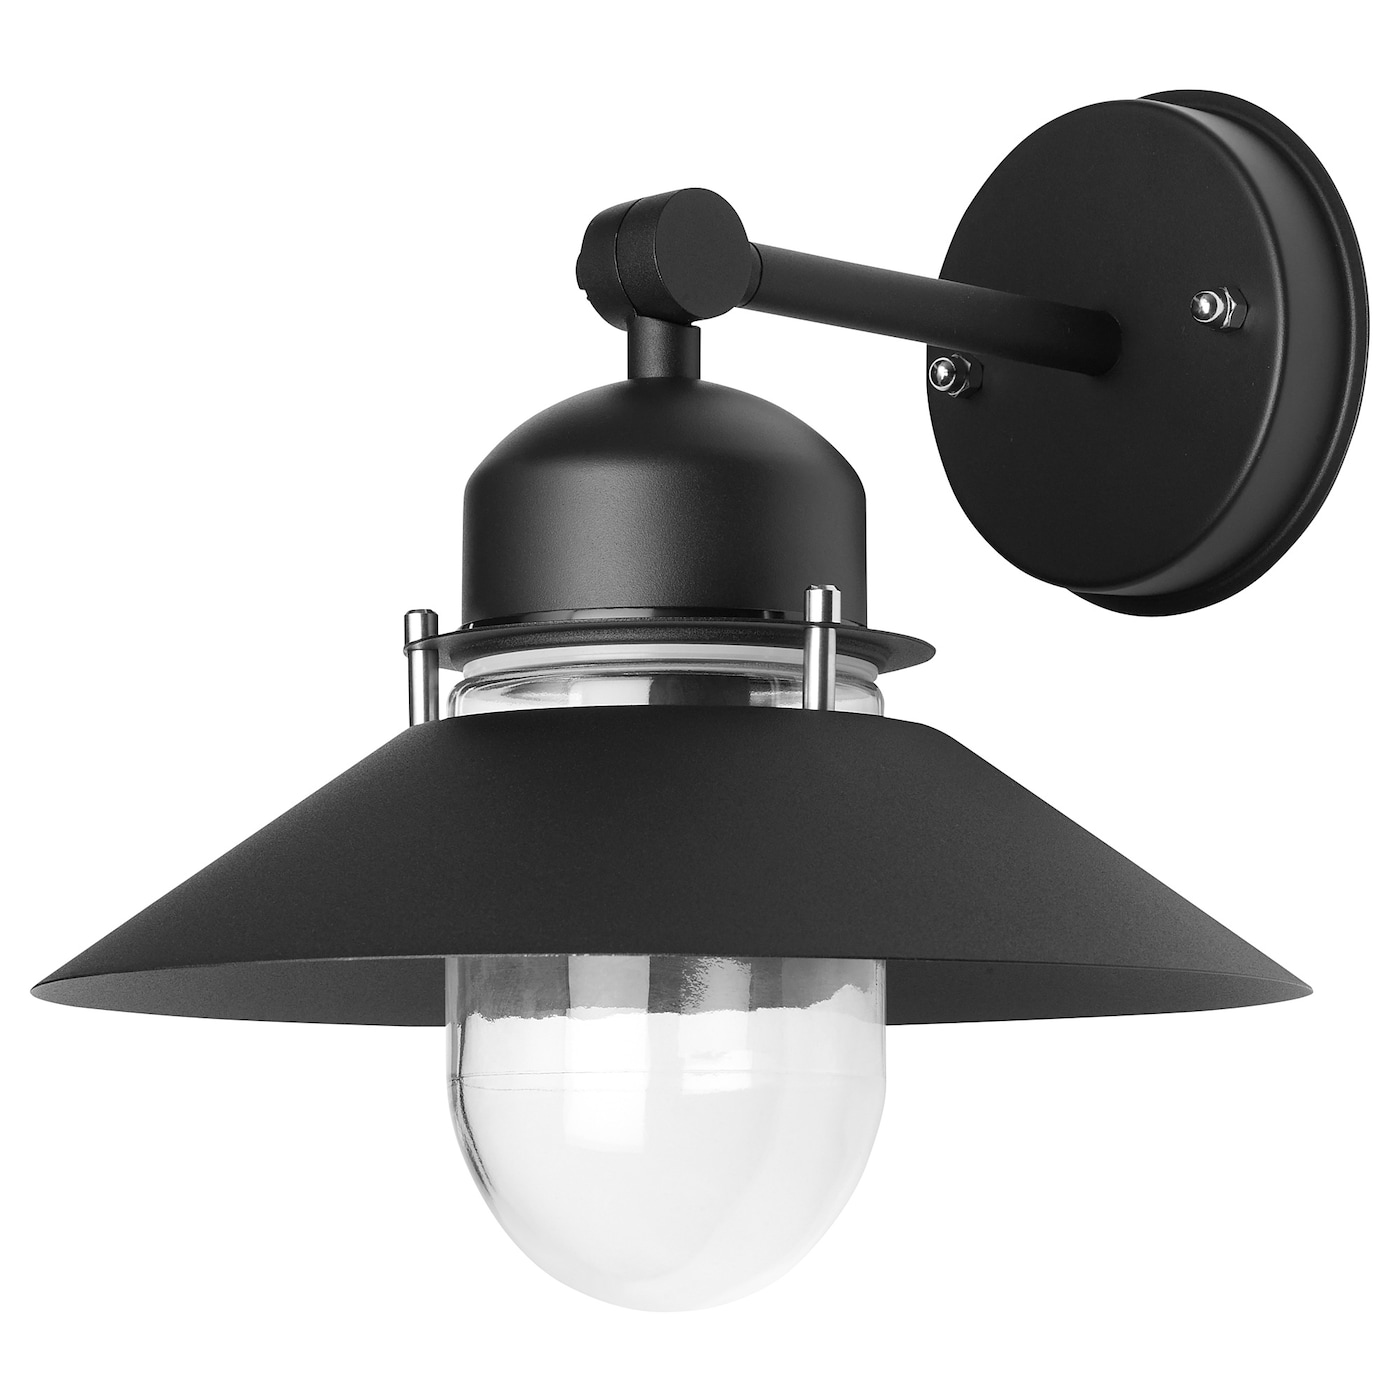 Настенный светильник -  UPPLID IKEA/ УППЛИД ИКЕА, 28 см, черный